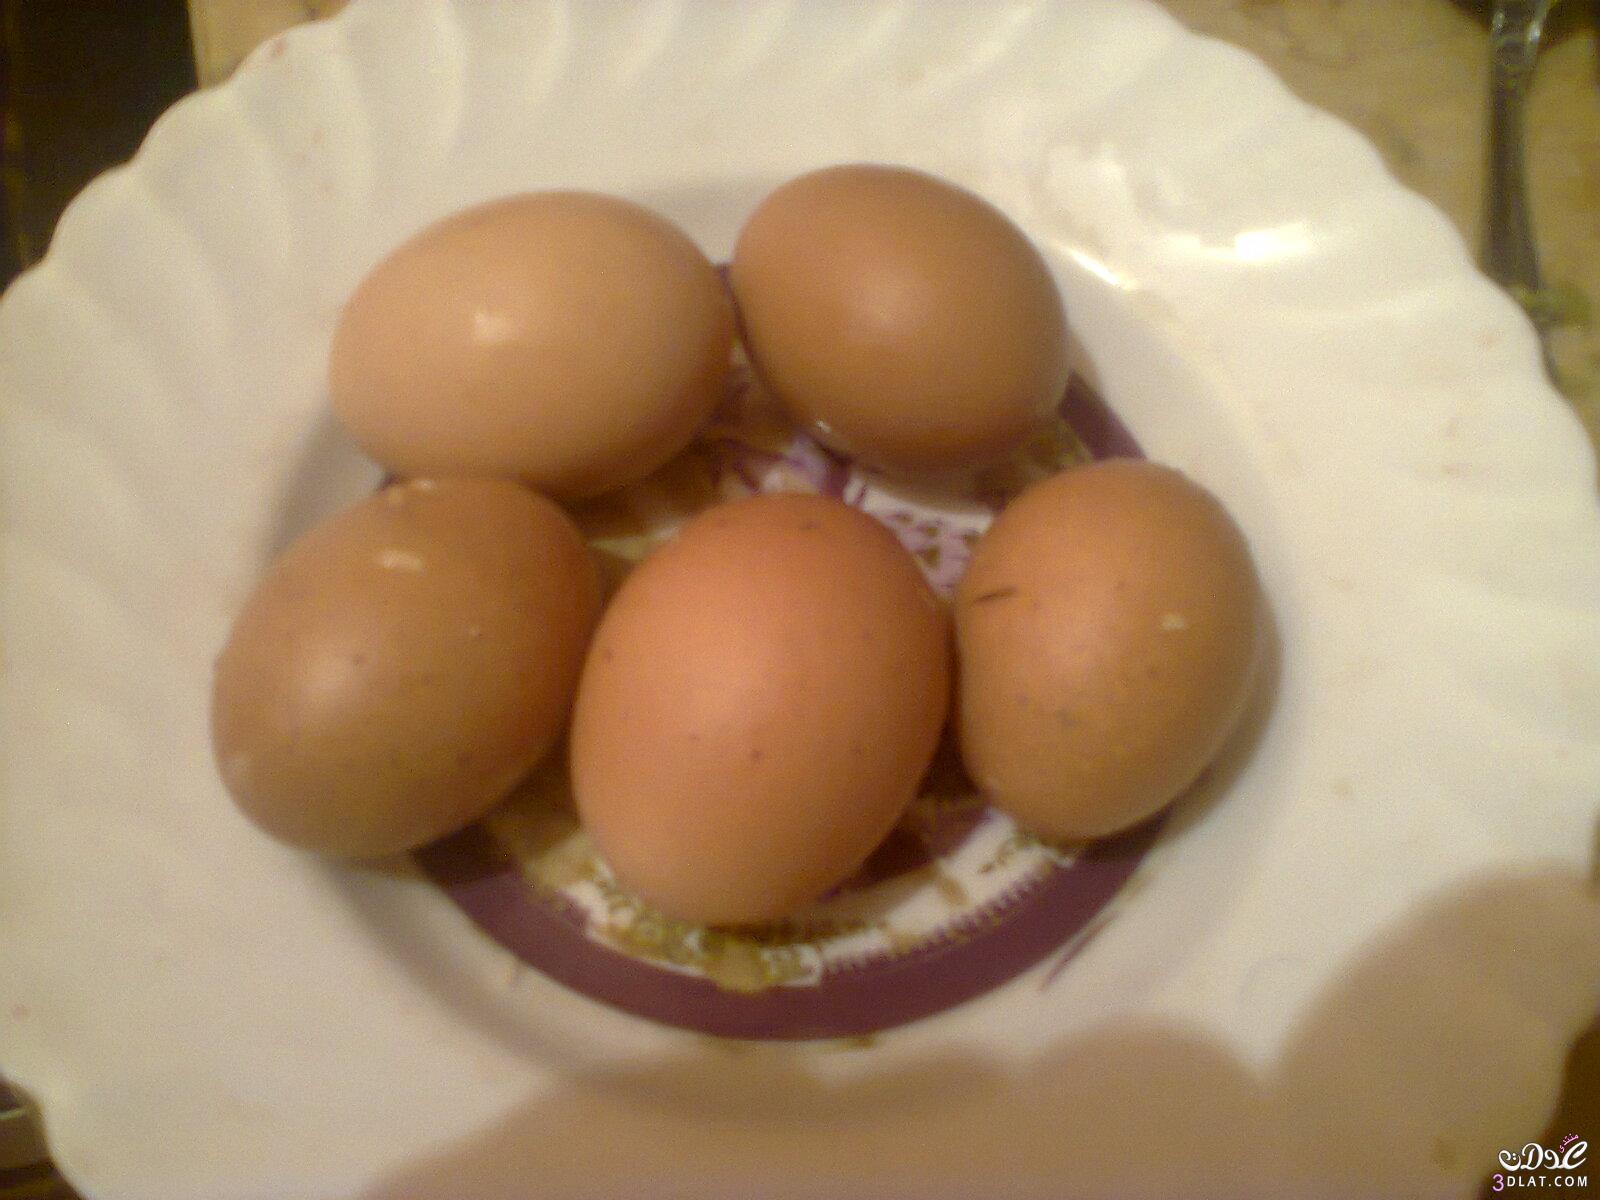 من مطبخى طريقة عمل البيض  بالفلفل والطماطم (الشكشوكه المصريه)